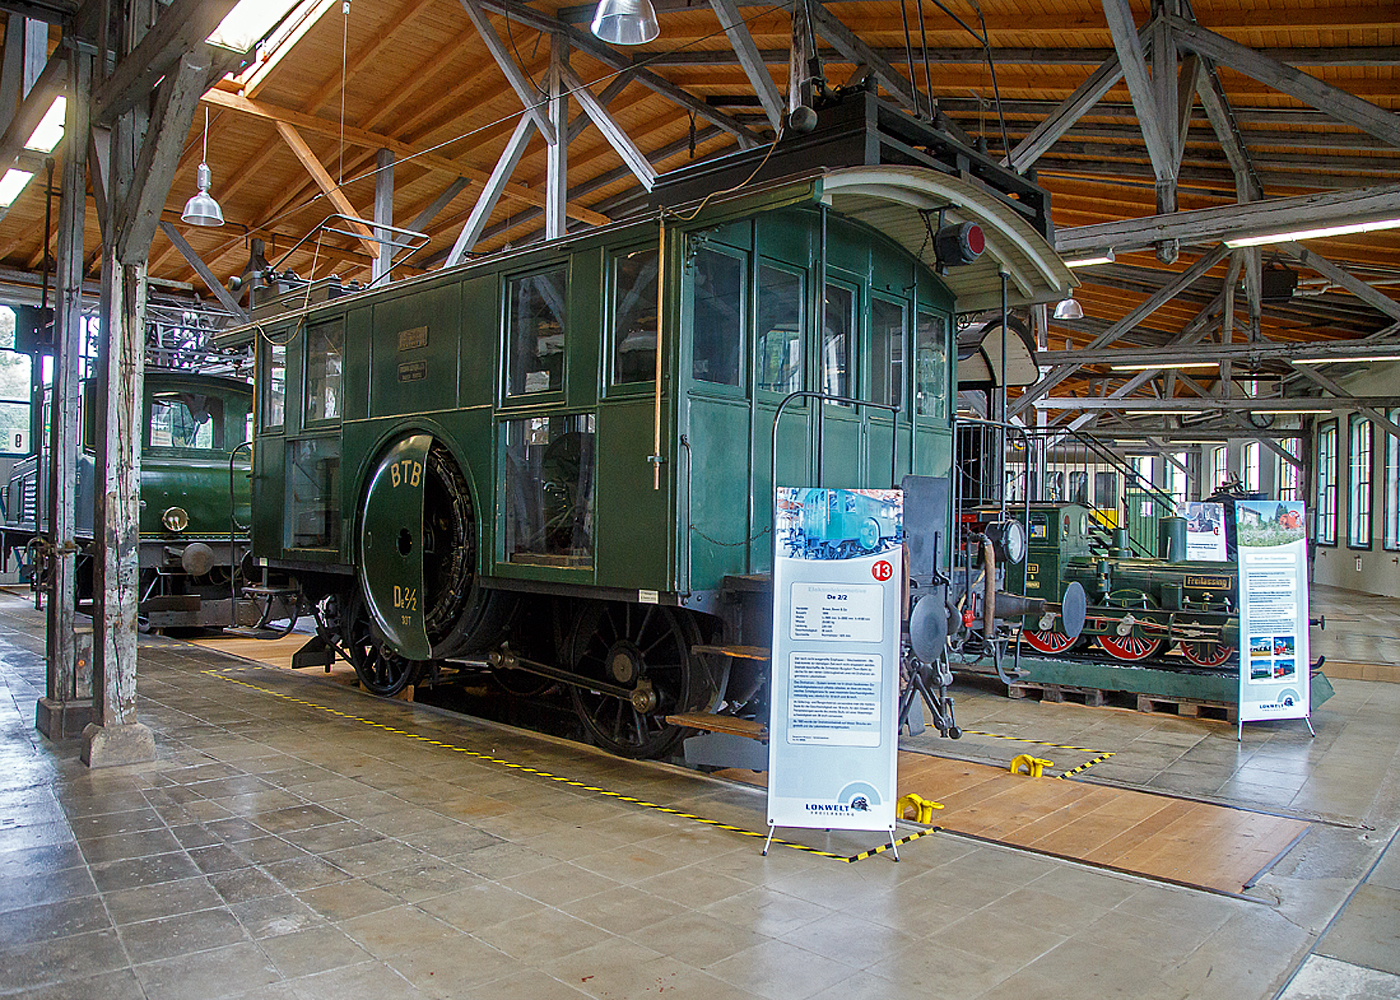 Die Drehstrom- Elektrolokomotive ex BTB De 2/2 Nr.1, ex BTB F 2/2 Nr. 1 (1902 – 1922), ex BTB E2E Nr. 1 (bis 1902), am 11.09.2022 in der Lokwelt Freilassing. Die Lok ist Eigentum des Deutschen Museums - Verkehrszentrum in Mnchen und eine Leihgabe die Lokwelt Freilassing

Dem Gterverkehr der Burgdorf-Thun-Bahn (BTB) dienten zwei Lokomotiven vom Typ F 2/2. Bis 1902 wurden sie als E2E bezeichnet, ab 1922 als De 2/2. Diese beiden ersten in der Schweiz, im Jahr 1899, gebauten elektrischen Lokomotiven (De 2/2 Nr.1 und  2) waren eine gemeinsame Konstruktion der Schweizerischen Lokomotiv- und Maschinenfabrik (SLM) in Winterthur fr den mechanischen Teil und der Brown, Boveri & Cie. (BBC) fr die elektrische Ausrstung. 

Der noch nicht ausgereifte Einphasen-Wechselstrom-Betrieb konnte zur damaligen Zeit noch nicht eingesetzt werden. Deshalb beschaffte die Schweizer Burgdorf-Thun-Bahn (BTB) zunchst fr den reinen Gterzugbetrieb zwei dieser mit Drehstrom (Dreiphasenwechselstrom) angetriebenen Lokomotiven. Das Drehstrom-System konnte nur in einem bestimmten Geschwindigkeitsbereich effektiv arbeiten, so dass ein mechanisches Schaltgetriebe fr zwei maximale Geschwindigkeiten notwendig war, nmlich fr 18 und 36 km/h.

Ab 1933 wurde der Drehstrombetrieb auf dieser Strecke eingestellt und die beiden Lokomotiven ausgemustert. Die beiden Lokomotiven sind als weltweit erste Drehstromlokomotiven fr den Vollbahnbetrieb erhalten geblieben. Die Nr. 1 befindet in der Lokwelt Freilassing, die Nr. 2 befindet sich im Verkehrshaus der Schweiz in Luzern.

Die beiden Motoren wiesen eine Leistung von je 150 PS (110 kW) auf. Das nur im Stillstand umschaltbare Getriebe ermglichte zwei Geschwindigkeiten, Die eine bis 18 km/h lie auf der grten Steigung von 25 ‰ eine Anhngelast von 100 Tonnen zu, die andere bis 36 km/h noch die Hlfte. Wobei die zulssige Hchstgeschwindigkeit betrug 50 km/h, so wurde in den spteren Betriebsjahren in Gefllen stromlos gefahren, um diese zu erreichen. Dank der hheren Geschwindigkeit htten die Lokomotiven ntigenfalls auch im Personenverkehr Verwendung finden knnen.

Die beiden 19-poligen Triebmotoren sind beidseits auf einer auf einem Hilfsgestell gelagerten gemeinsamen Welle montiert. ber ein Vorgelege wurde das Drehmoment mittels Kuppelstangen auf die beiden Achsen bertragen. Zum Anfahren war ein fr beide Motoren gemeinsamer Widerstand vorhanden, der mit dem in jedem Fhrerstand vorhandenen Kontroller allmhlich ausgeschaltet wurde. Beleuchtung, Heizung und Hilfsbetriebe wurden mit einer Spannung von 100 Volt betrieben. Die Lokomotiven weisen an beiden Enden offene Plattformen auf. Die vier Schleifbgel auf dem Dach legten sich selbstttig beim Wechsel der Fahrtrichtung nach hinten um. Zum Abbgeln mussten die an den Bgeln angebrachten kurzen Zugseile vom Boden aus mit hlzernen Stangen heruntergezogen und in Arretierhaken eingehngt werden.

TECHNISCHE DATEN:
Baujahr: 1899, Ausmusterung1930
Spurweite: 1.435 mm (Normalspur)
Achsfolge: B
Lnge ber Puffer: 7.800  mm
Achsabstand: 3.140 mm
Treibraddurchmesser:  1.230 mm
Dienstgewicht: 29.600 kg
Hchstgeschwindigkeit: 18 km/h / 36 km/h (stromlos bergab 50 km/h)
Stundenleistung: 300 PS (220 kW)
Stundenzugkraft: 4.400 daN
Stromsystem: 750 V, 40 Hz ∆
Anzahl der Fahrmotoren: 2
bersetzungsstufen: 2 (fr 18 / 36 km/h)

Die Burgdorf-Thun-Bahn (BTB) war eine Eisenbahngesellschaft in der Schweiz. Ihre Strecke von Burgdorf ber Konolfingen nach Thun wurde als erste elektrische Vollbahn der Schweiz im Jahr 1899 dem Betrieb bergeben. Heute ist sie Bestandteil der BLS AG